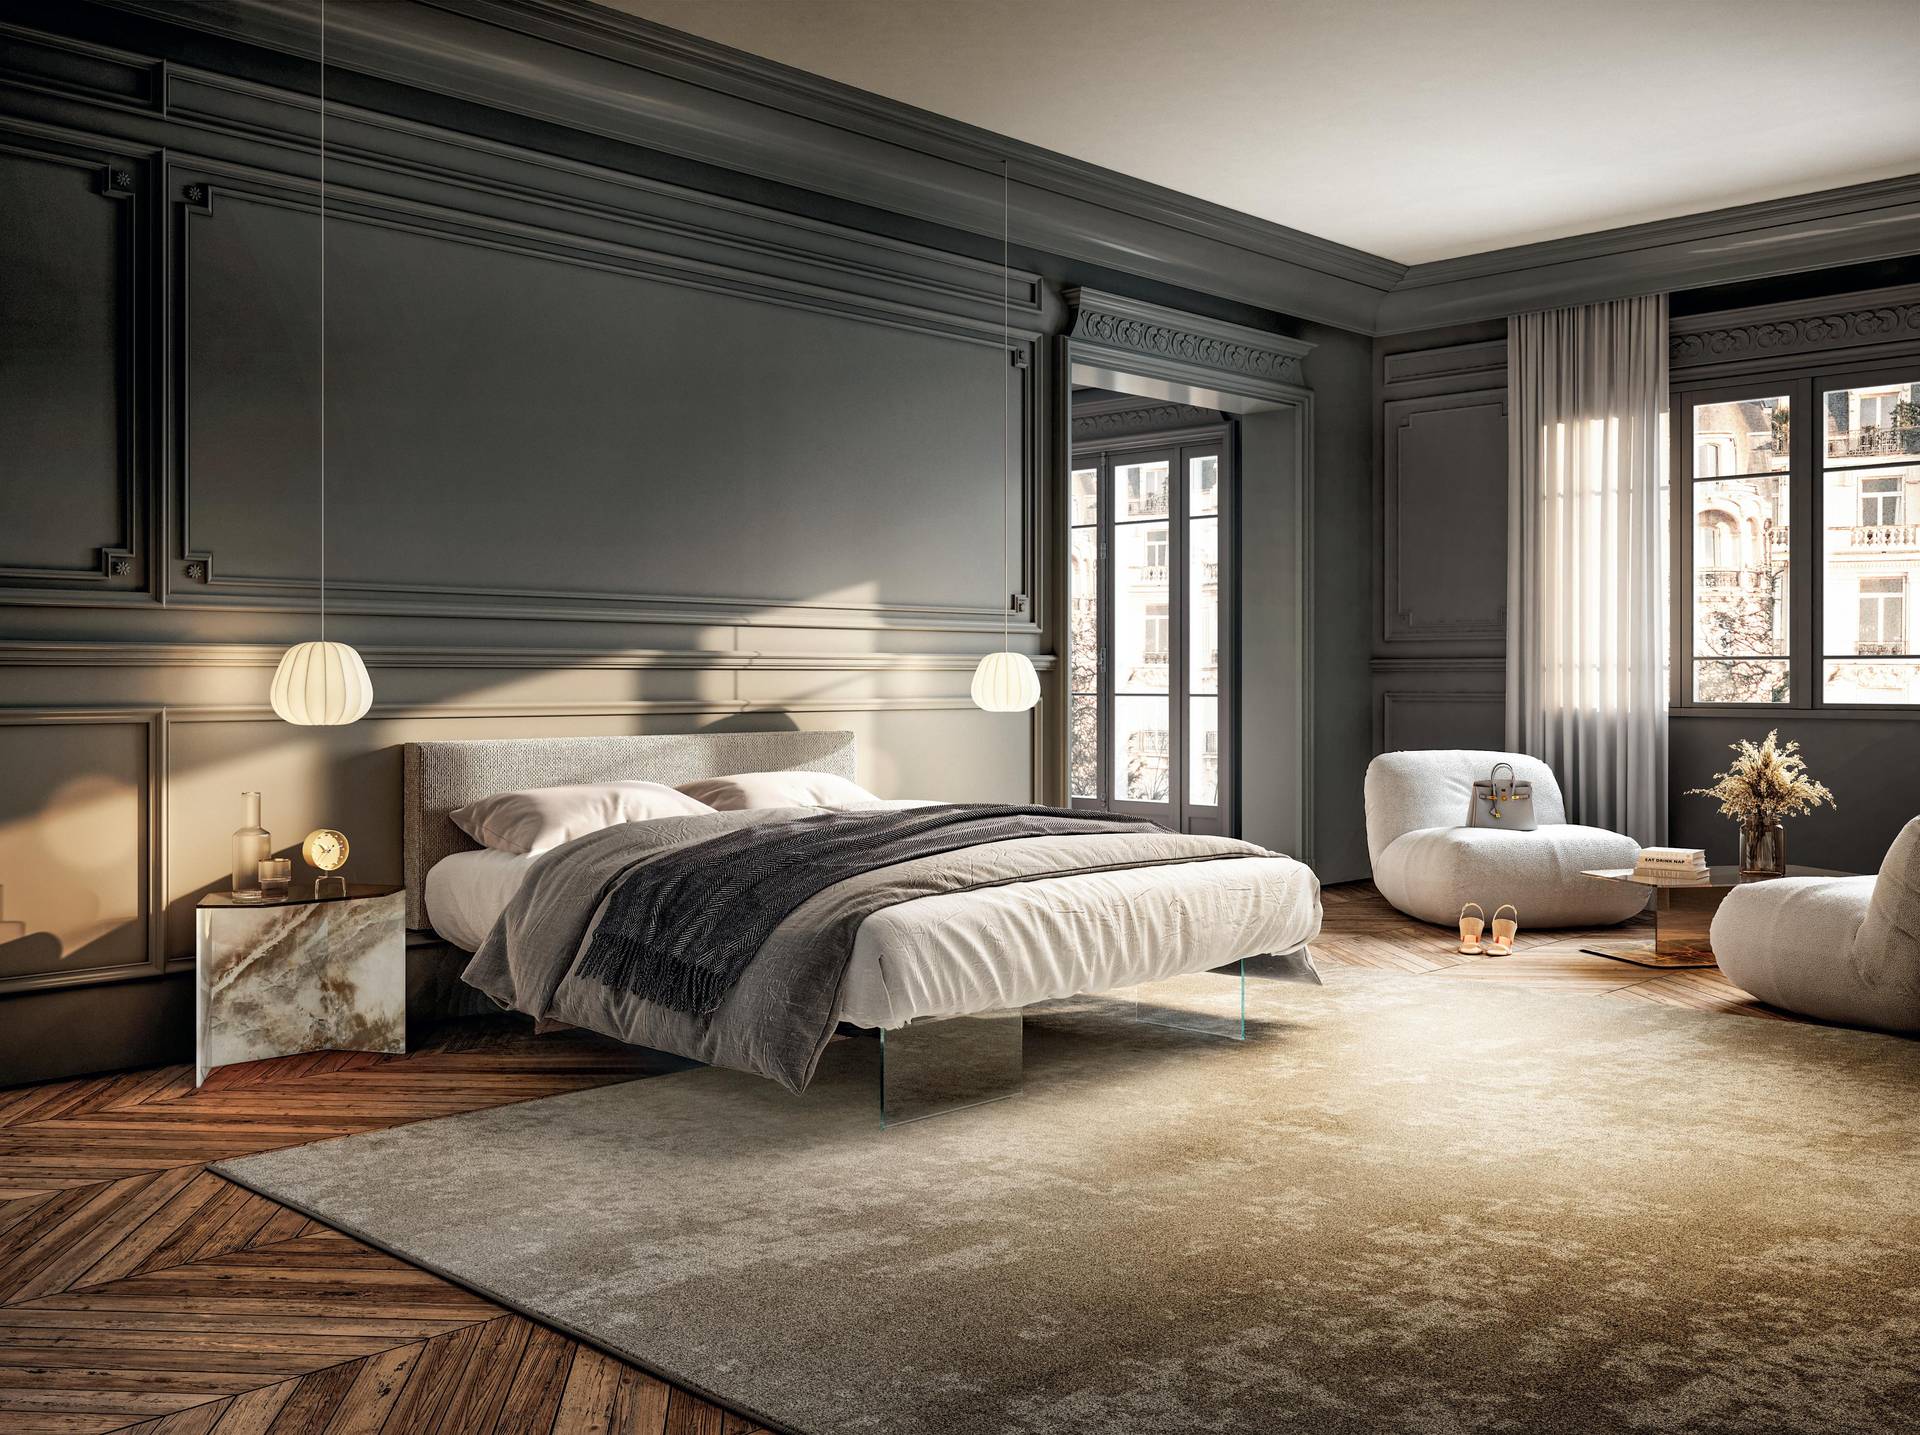 Dormitorio espectacular con cama con patas de cristal al aire y cabezal tapizado con dos sillones redondos en blanco en frente